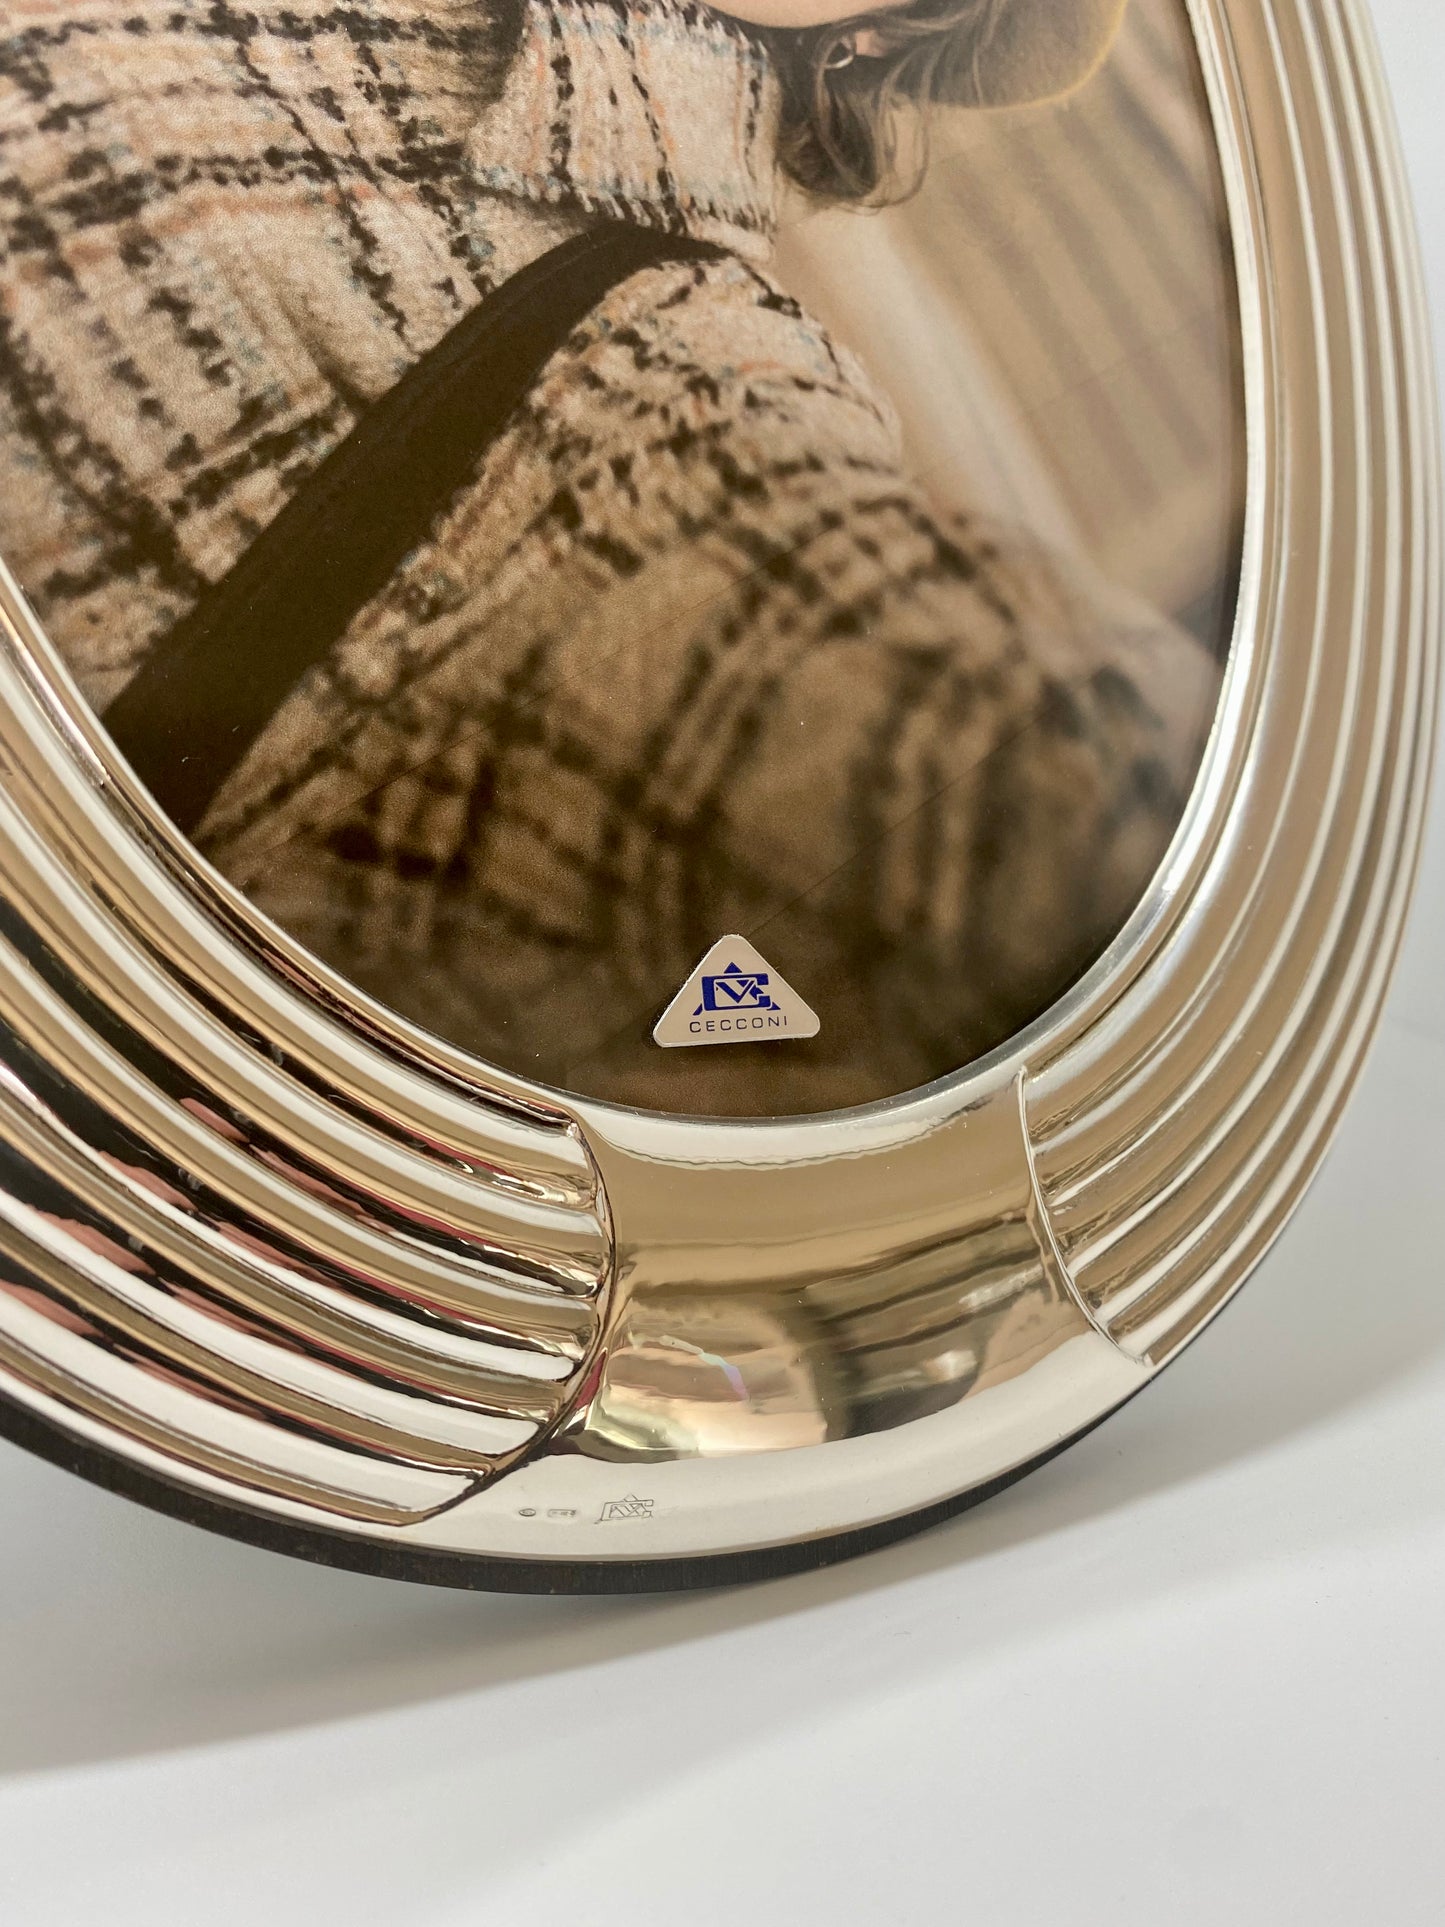 Portafoto Bilaminato in argento ovale